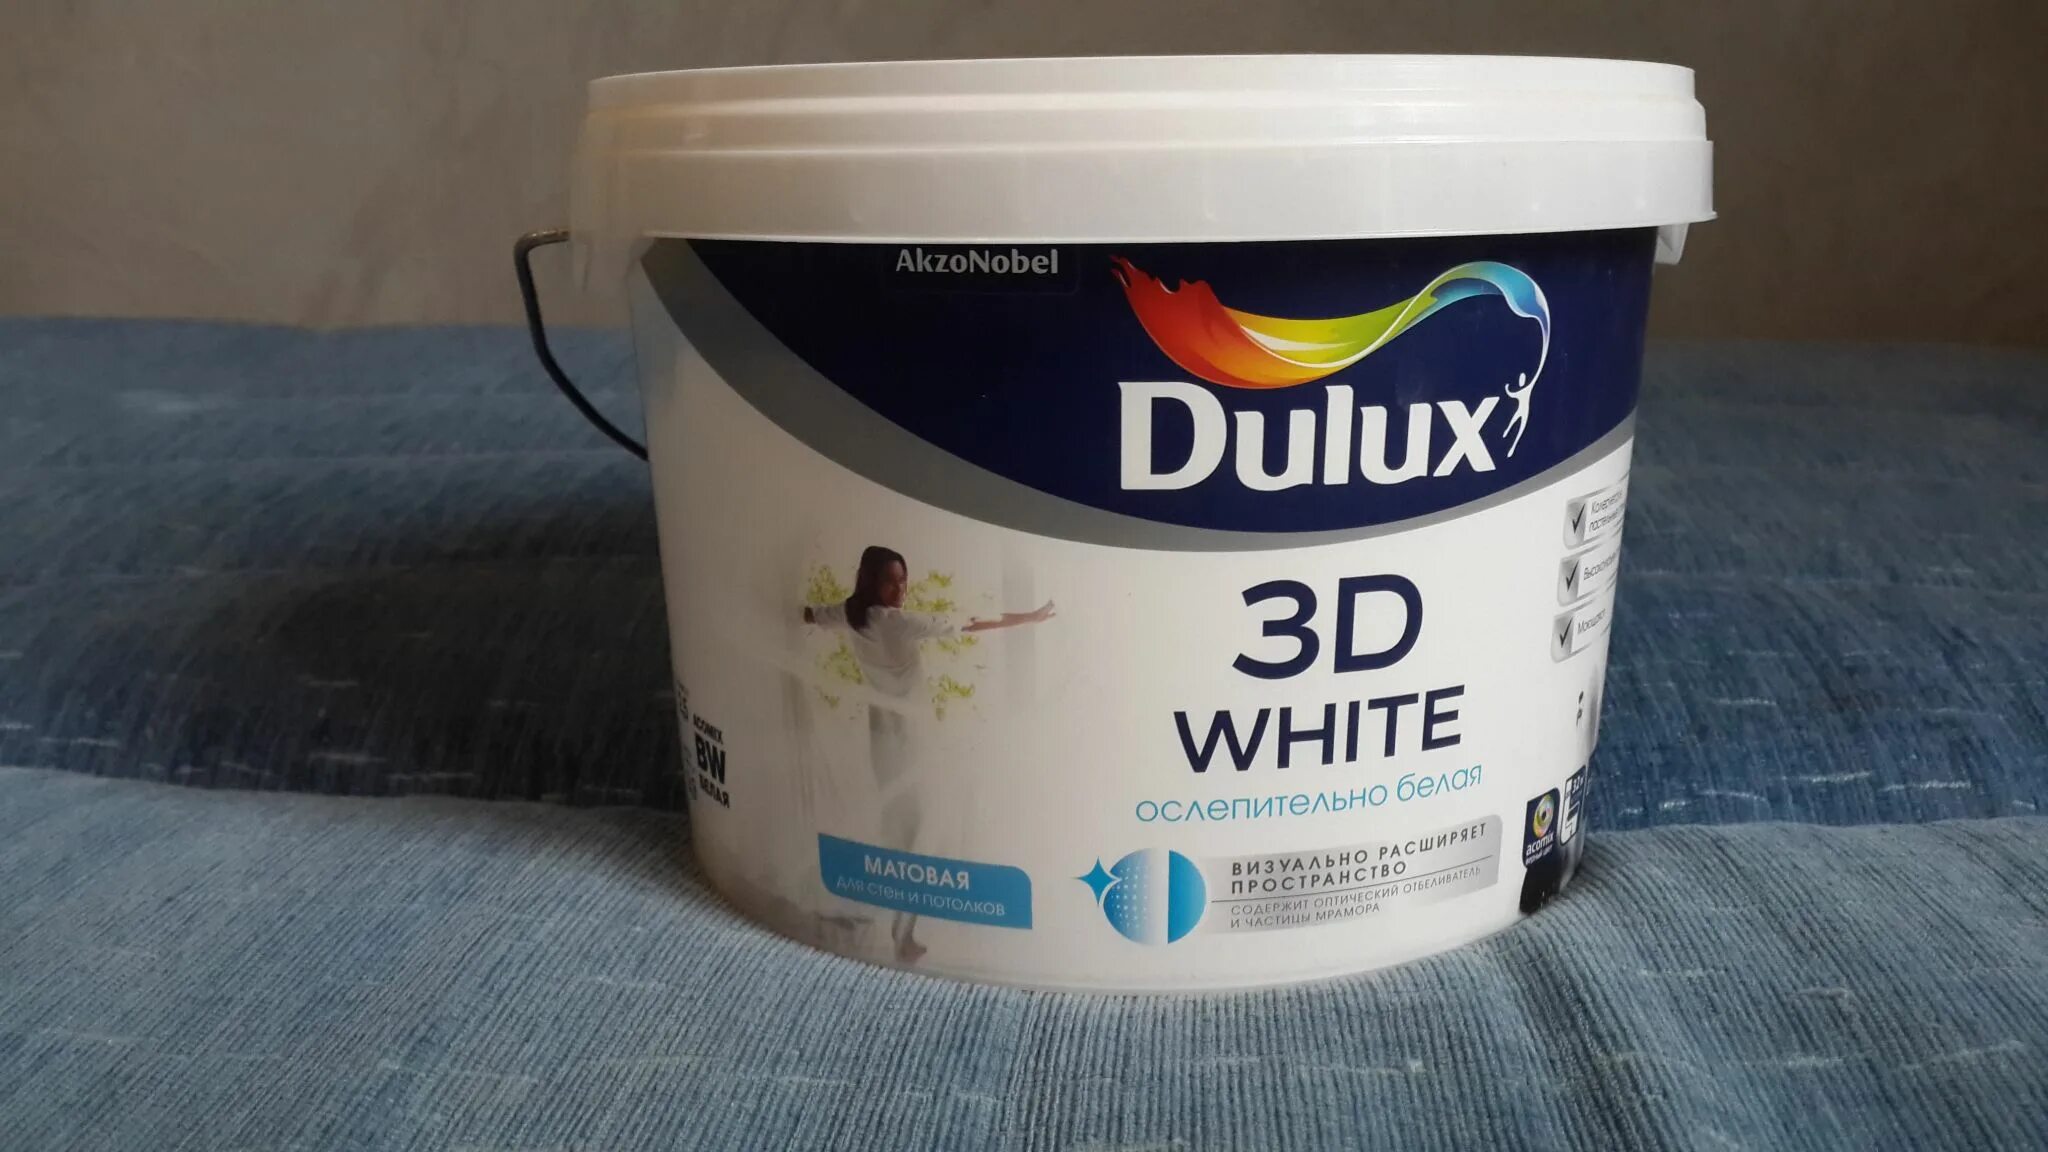 Какая фирма краска. Dulux 3d White краска для стен и потолков. Краска для стен и потолков Dulux 3d White матовая 9л. Dulux 3d White 5 л. Делюкс 3д Вайт краска.